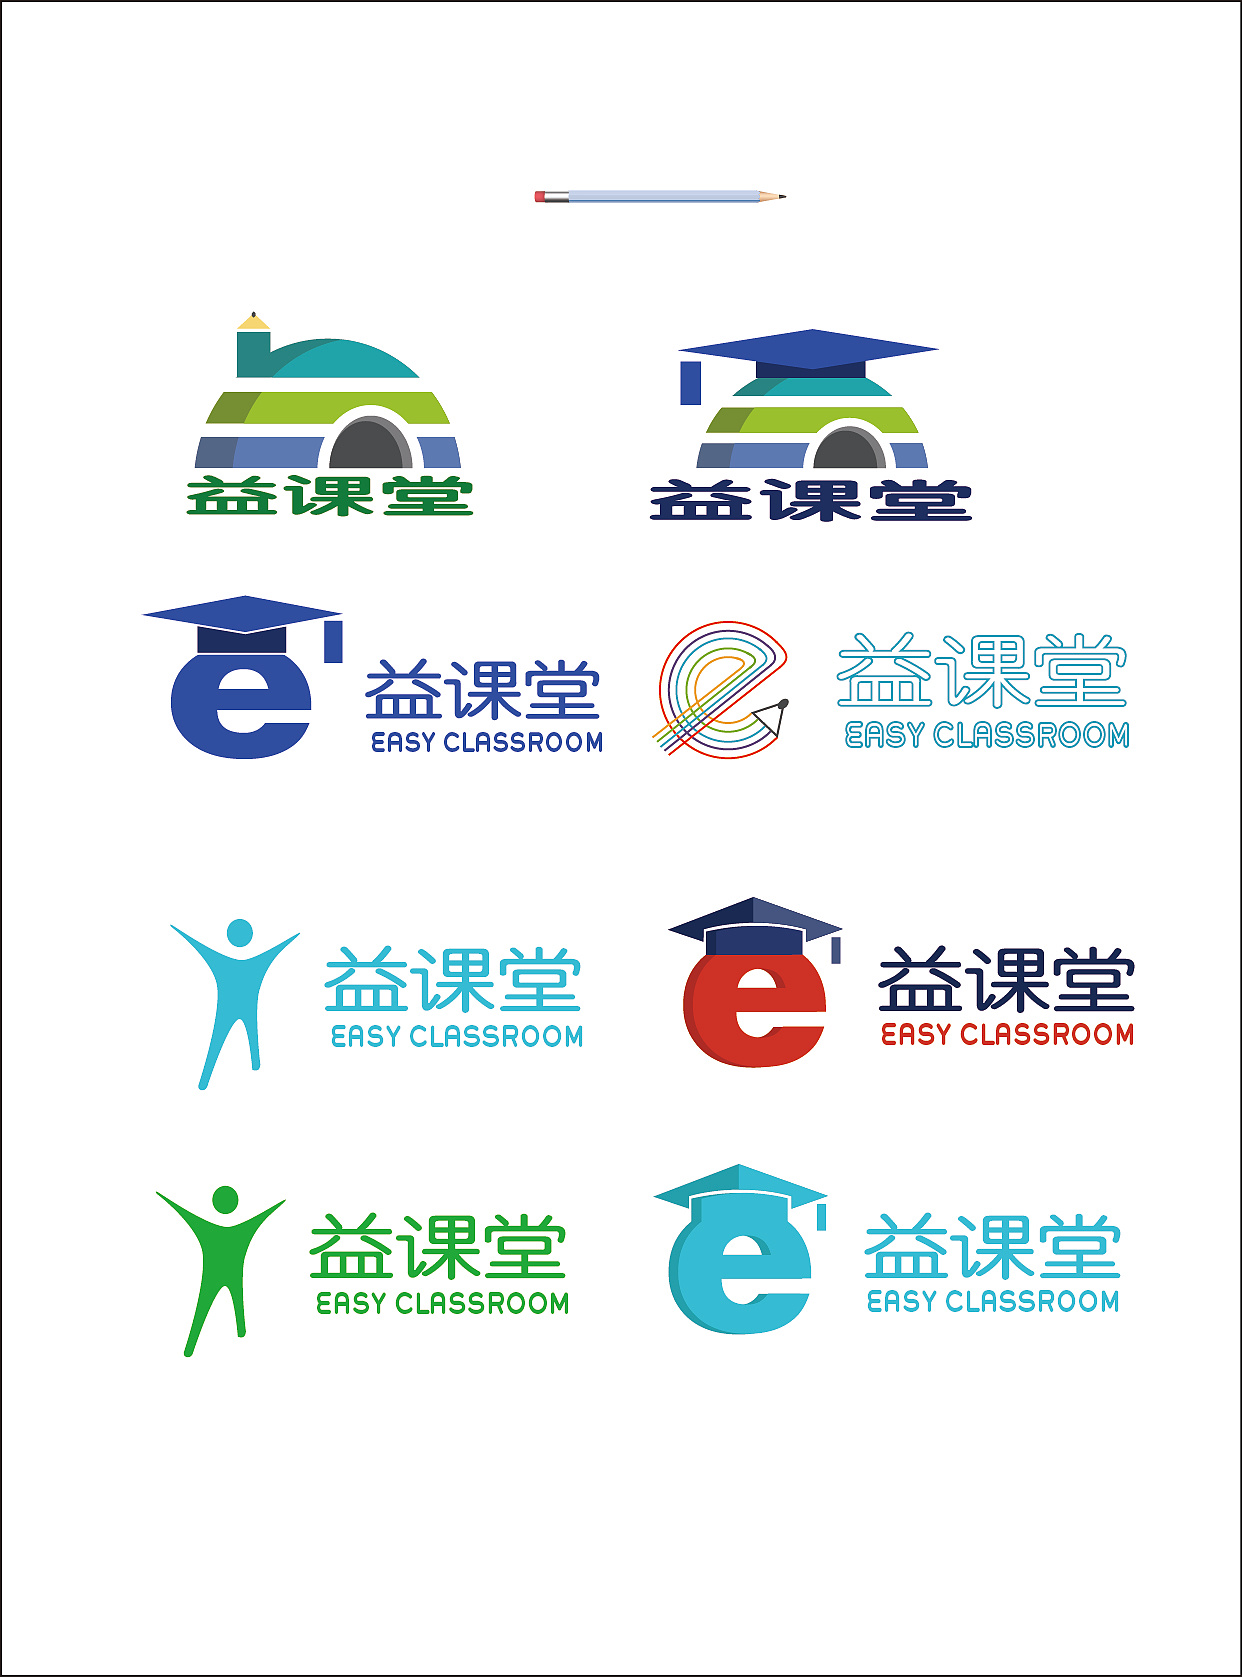 益课堂手机APP教育软件logo设计方案|平面|品